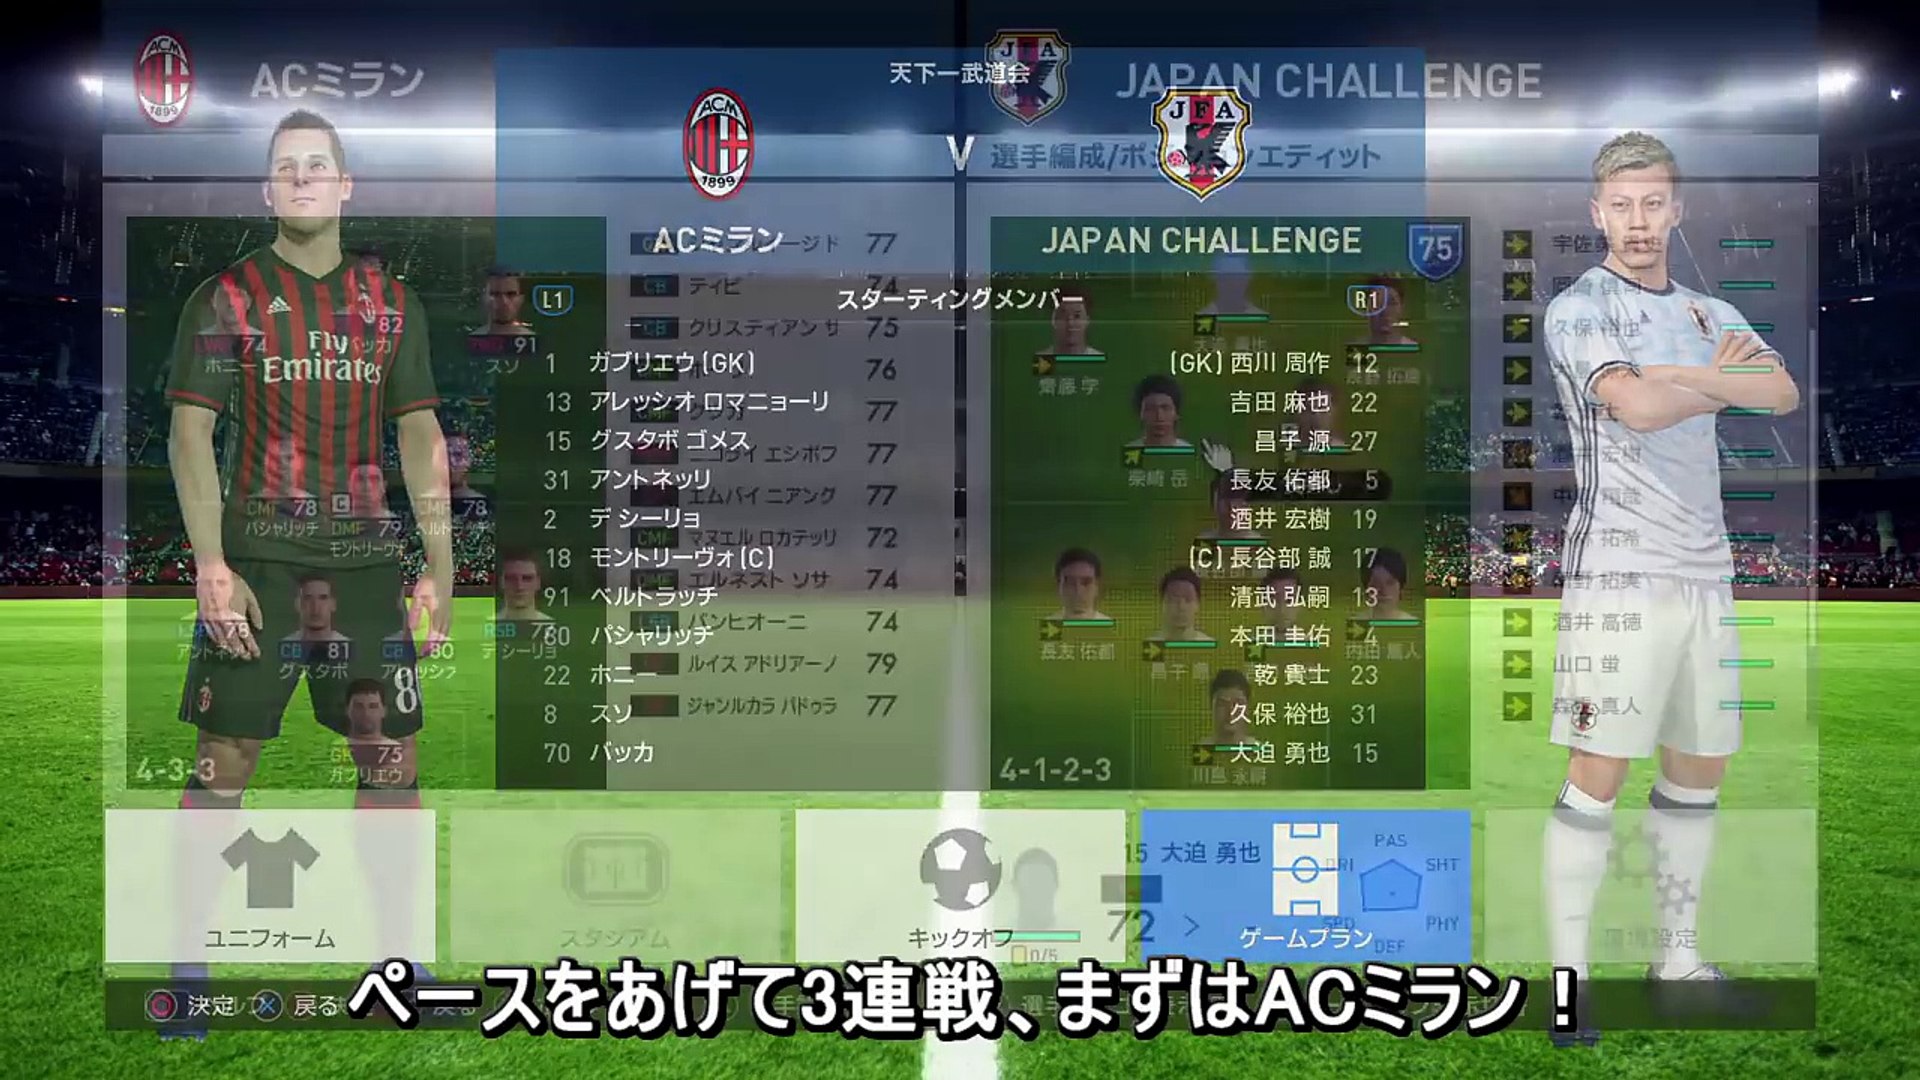 ウイイレ17 日本代表で世界最強リーグに挑戦part25 Japan Challenge Video Dailymotion